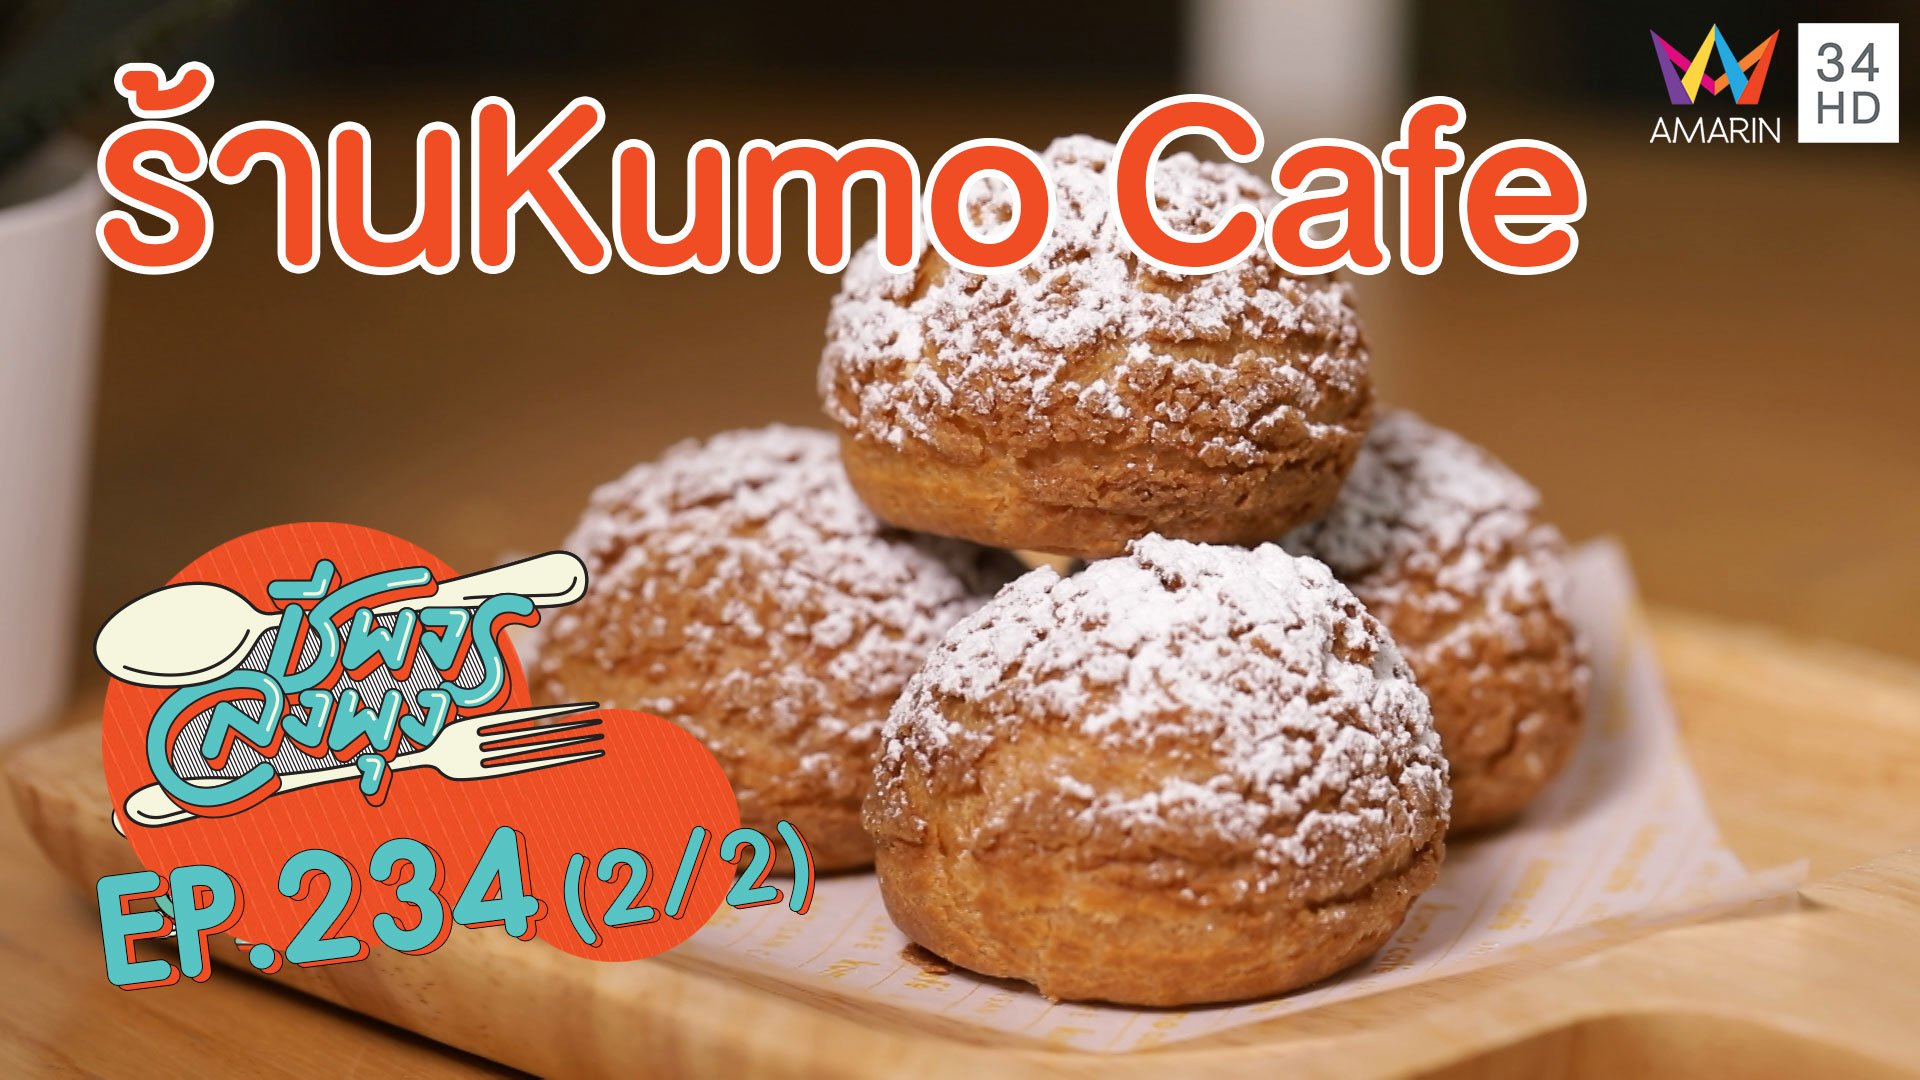 คาเฟ่นั่งชิลสายหวานร้องว้าว! 'ร้านKumo Cafe' | ชีพจรลงพุง | 5 ก.ย. 63 (2/2) | AMARIN TVHD34